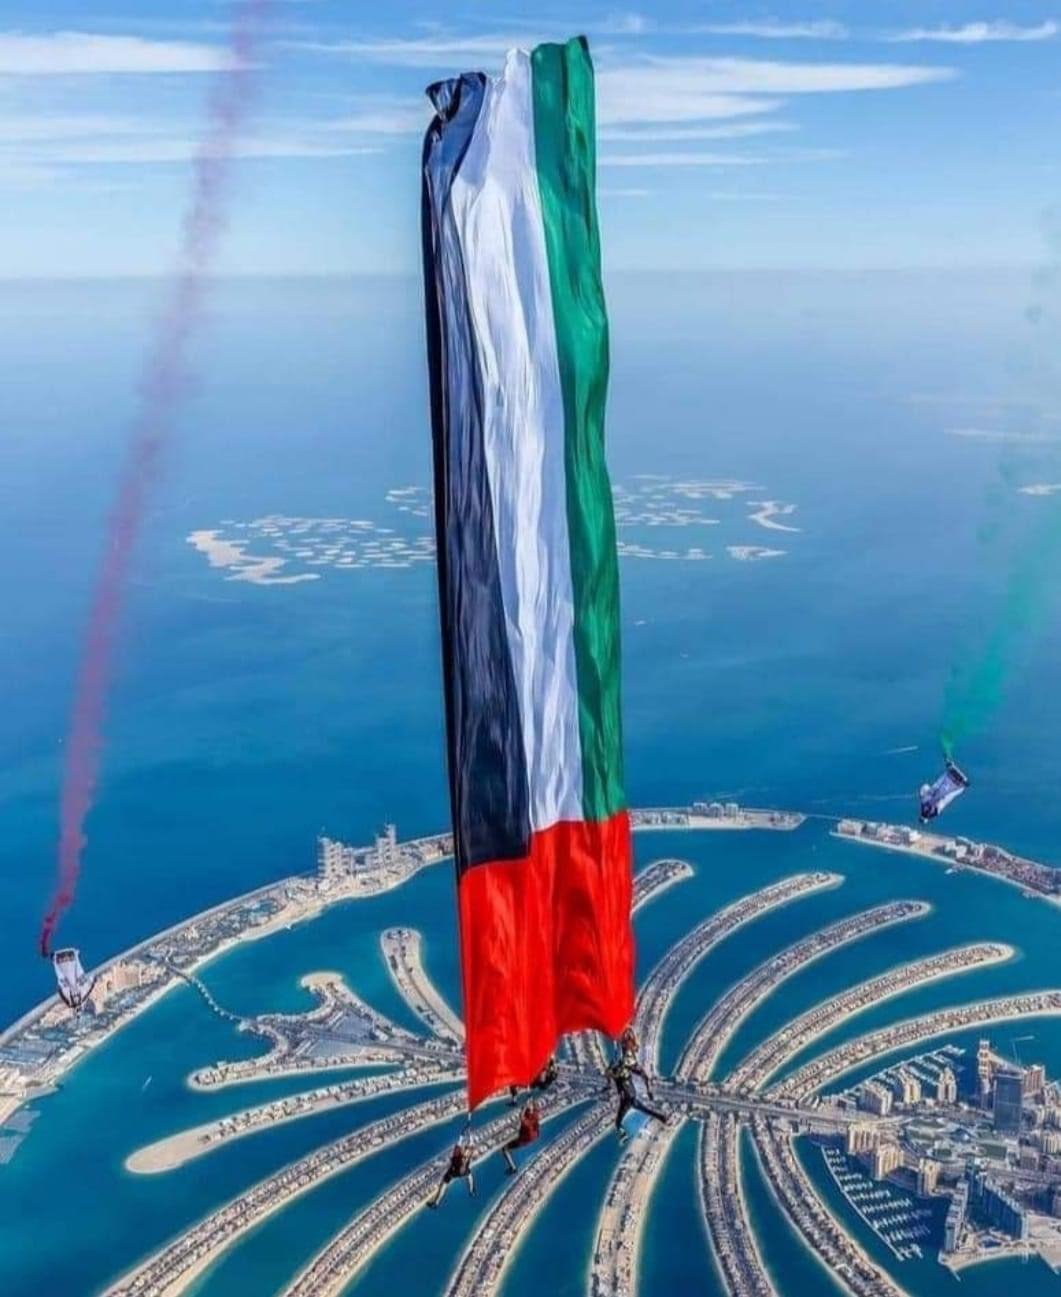 الامارات العربية المتحدة - اليوم الوطني الاماراتي الخمسين - united arab emirates - national day